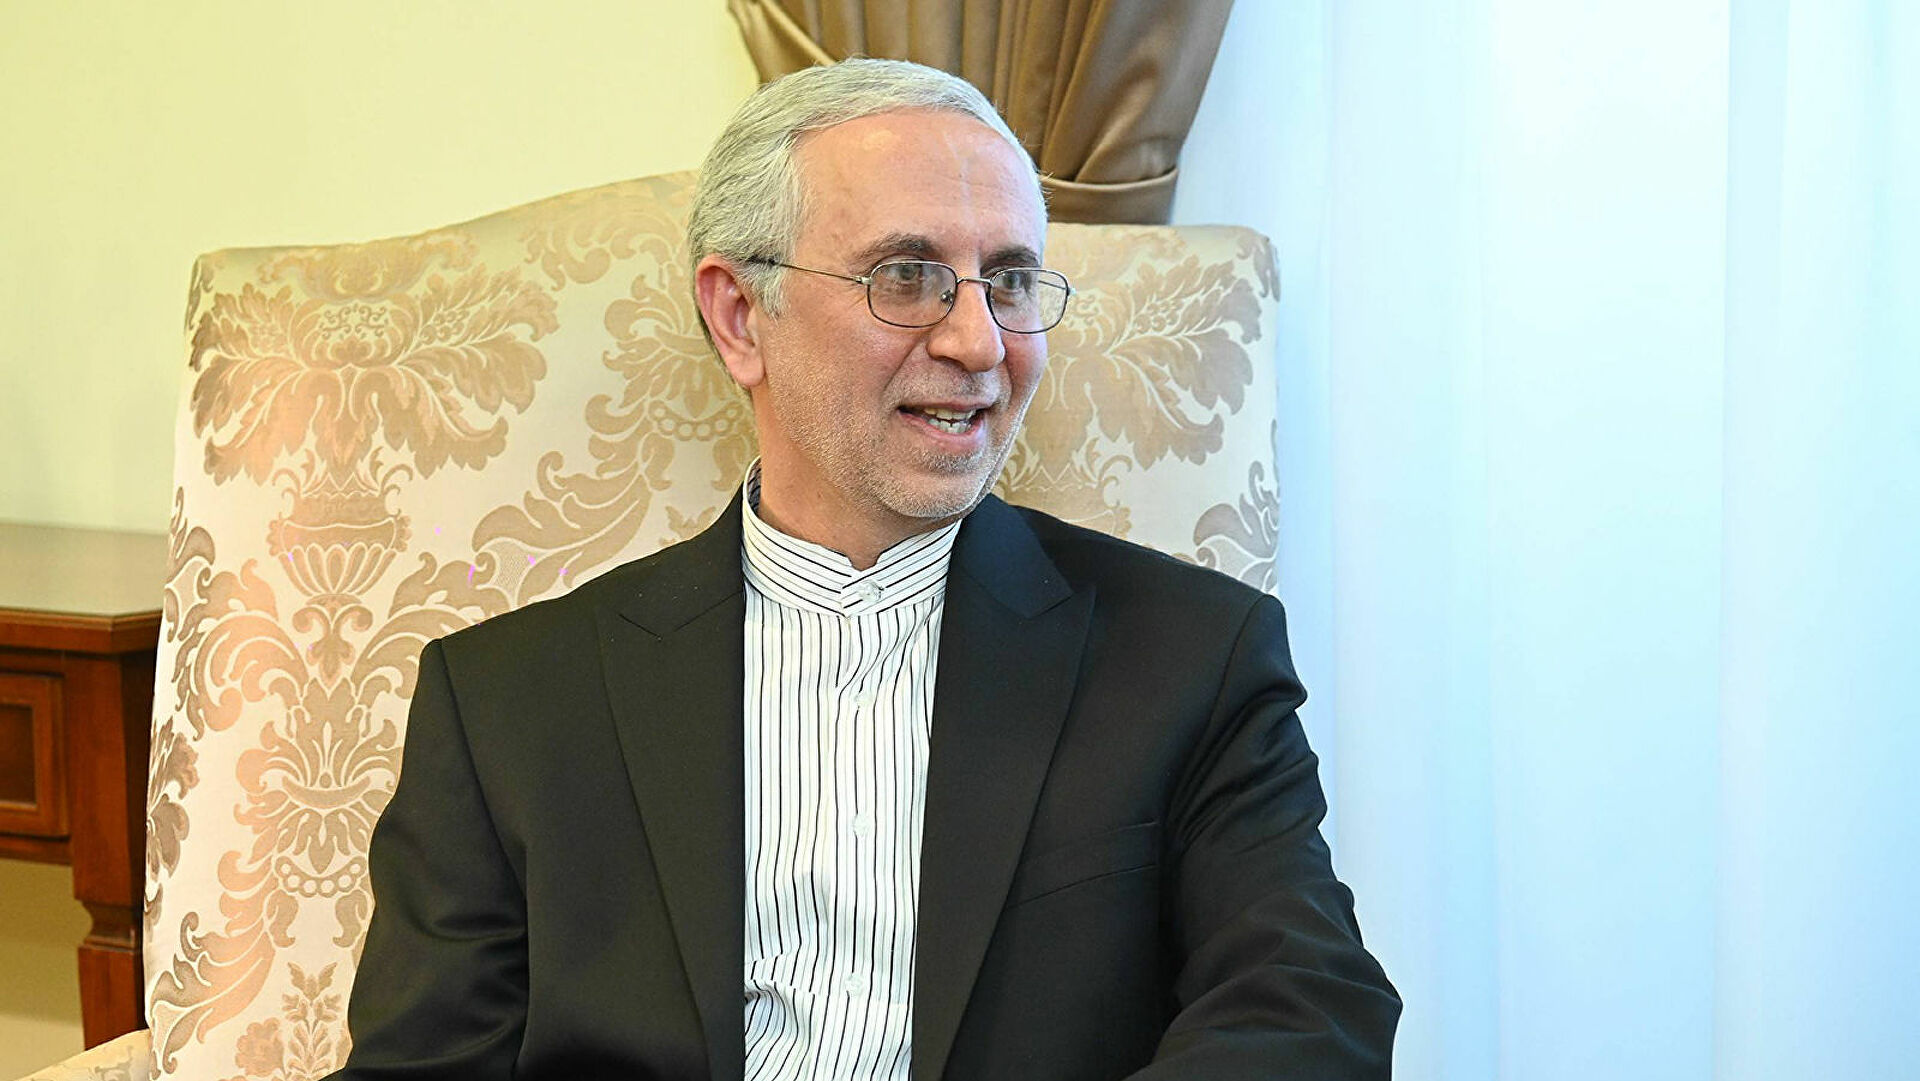 Открытие консульства Ирана в Капане говорит о важности Сюника для ИРИ - посол Зохури